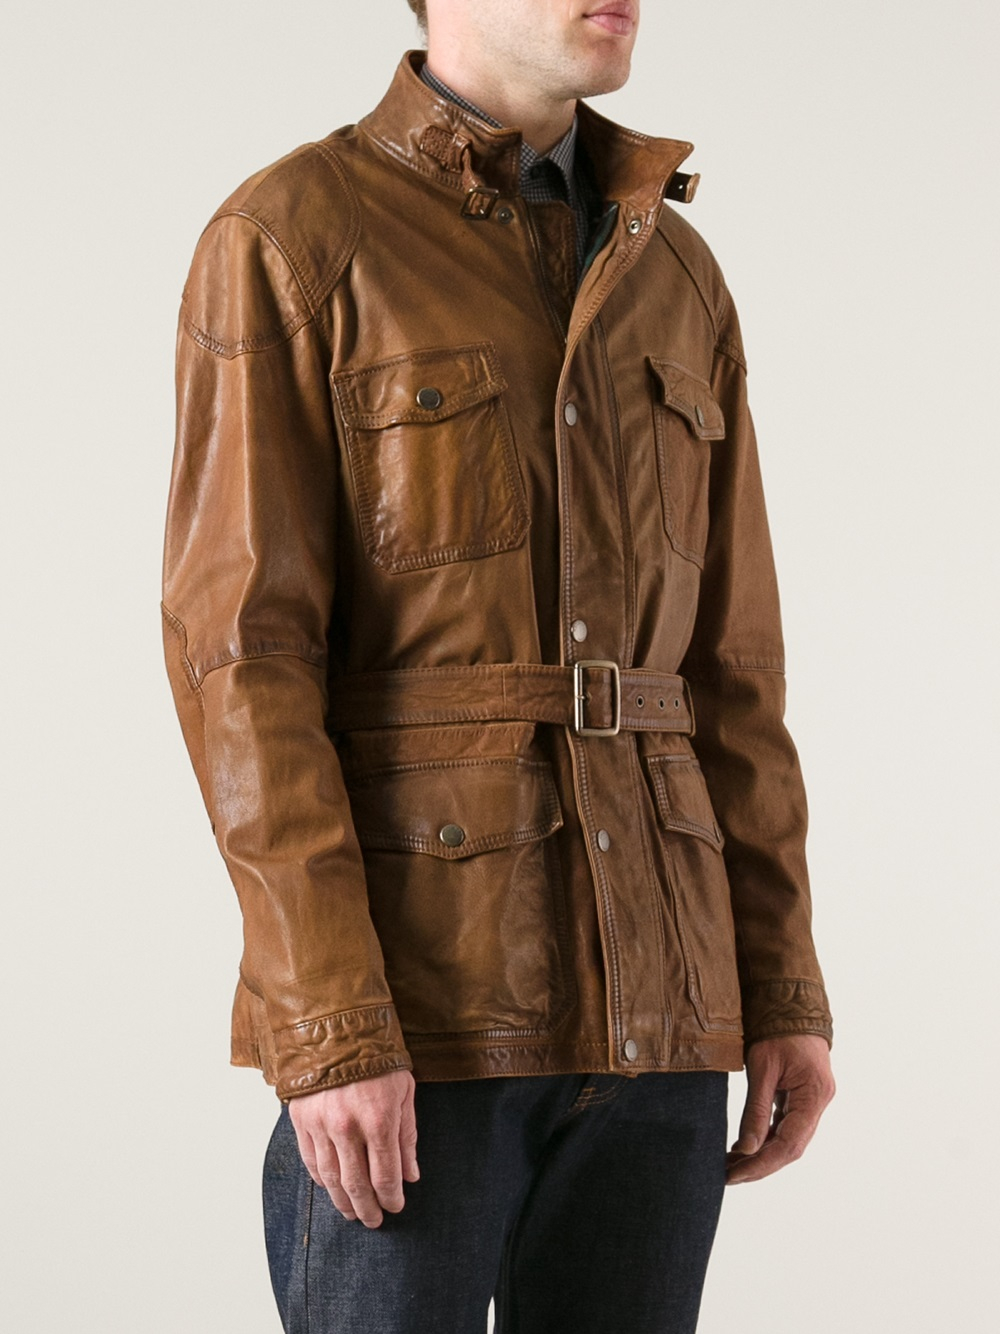 Lyst - Hackett Hackett Leather Jacket in Brown for Men